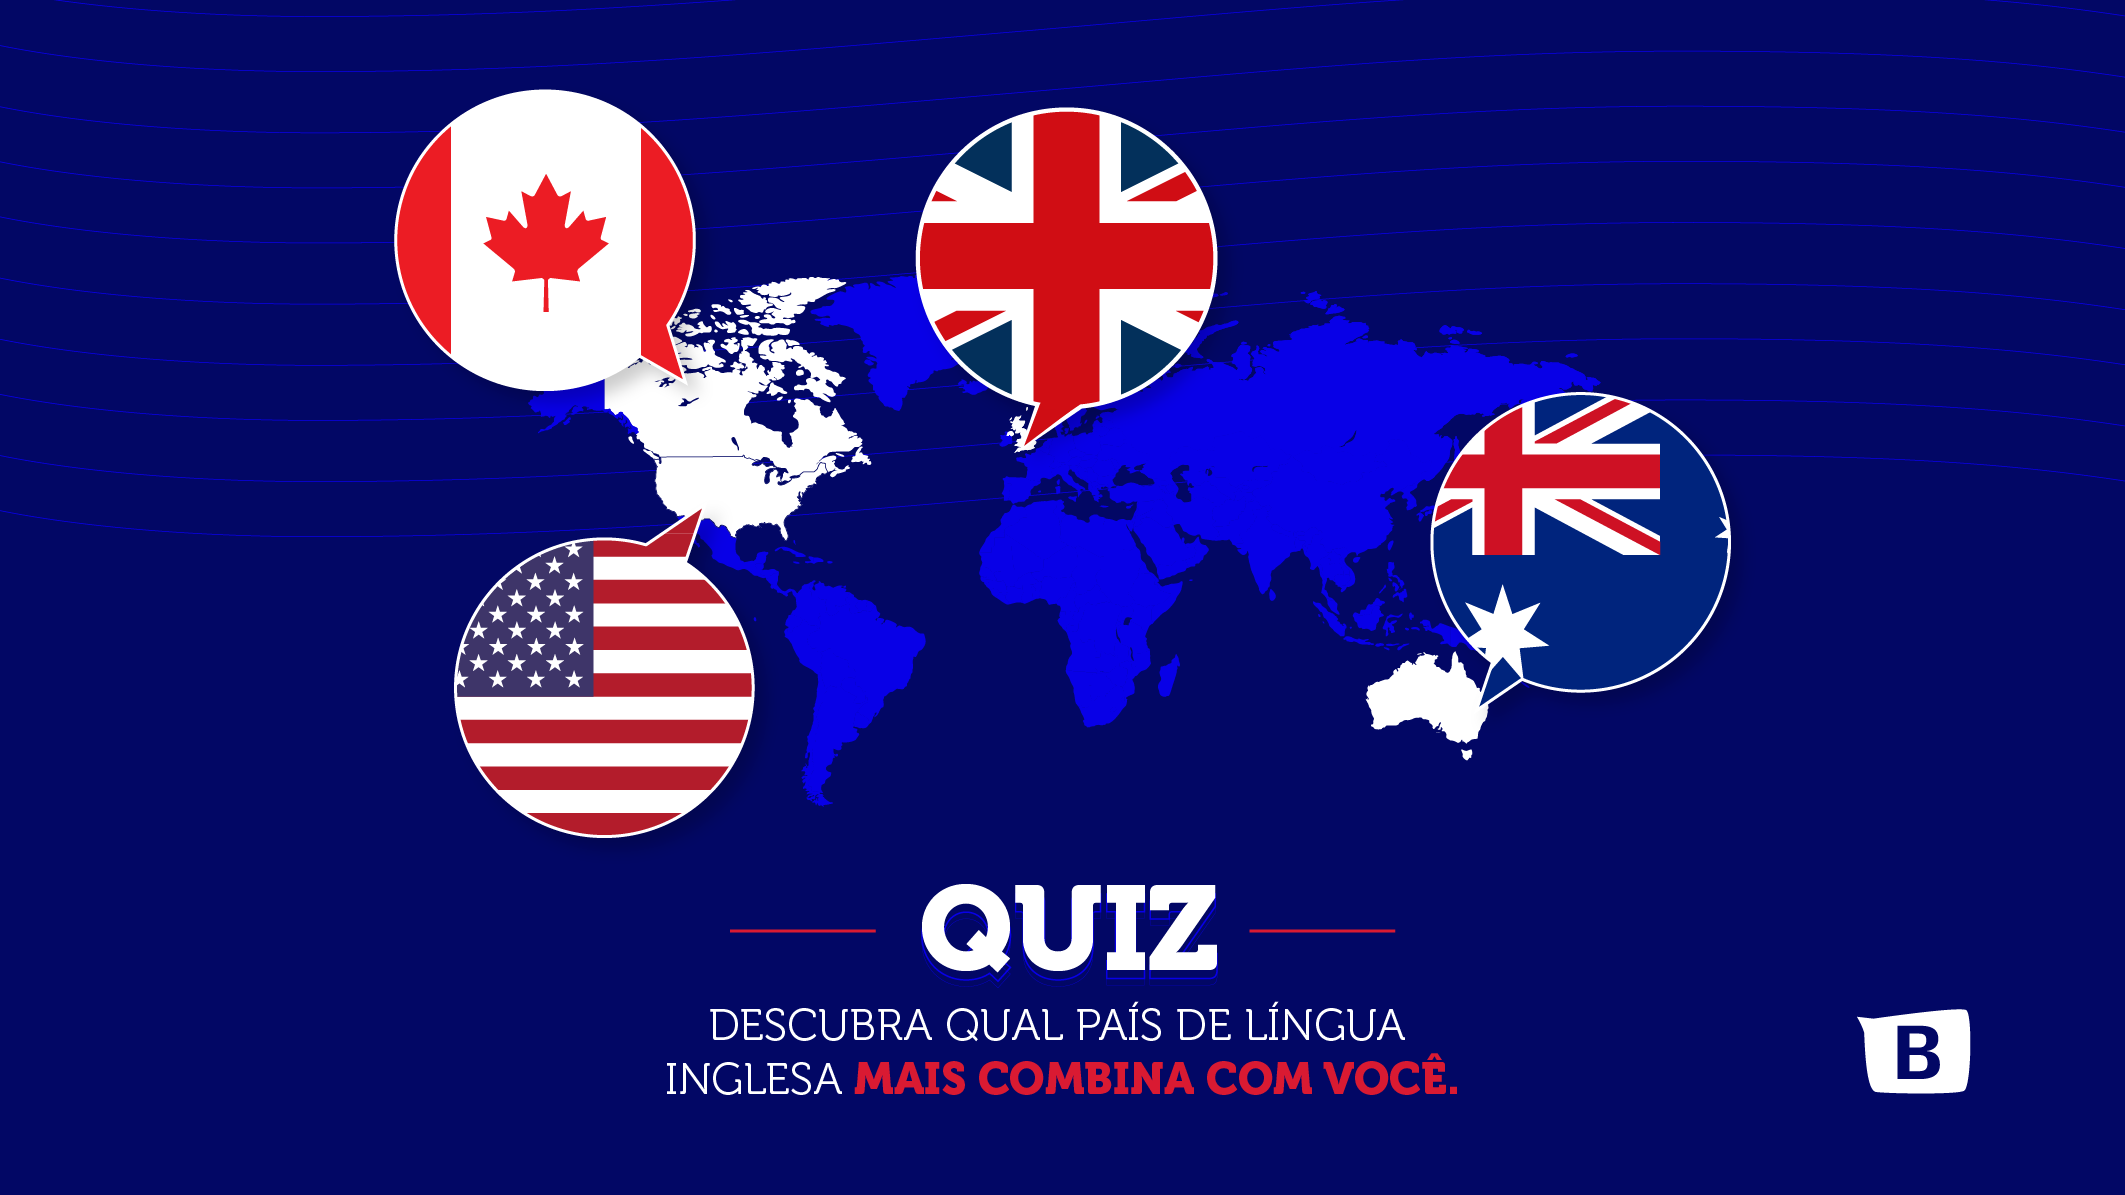 Descubra qual país de língua inglesa mais combina com você. 1